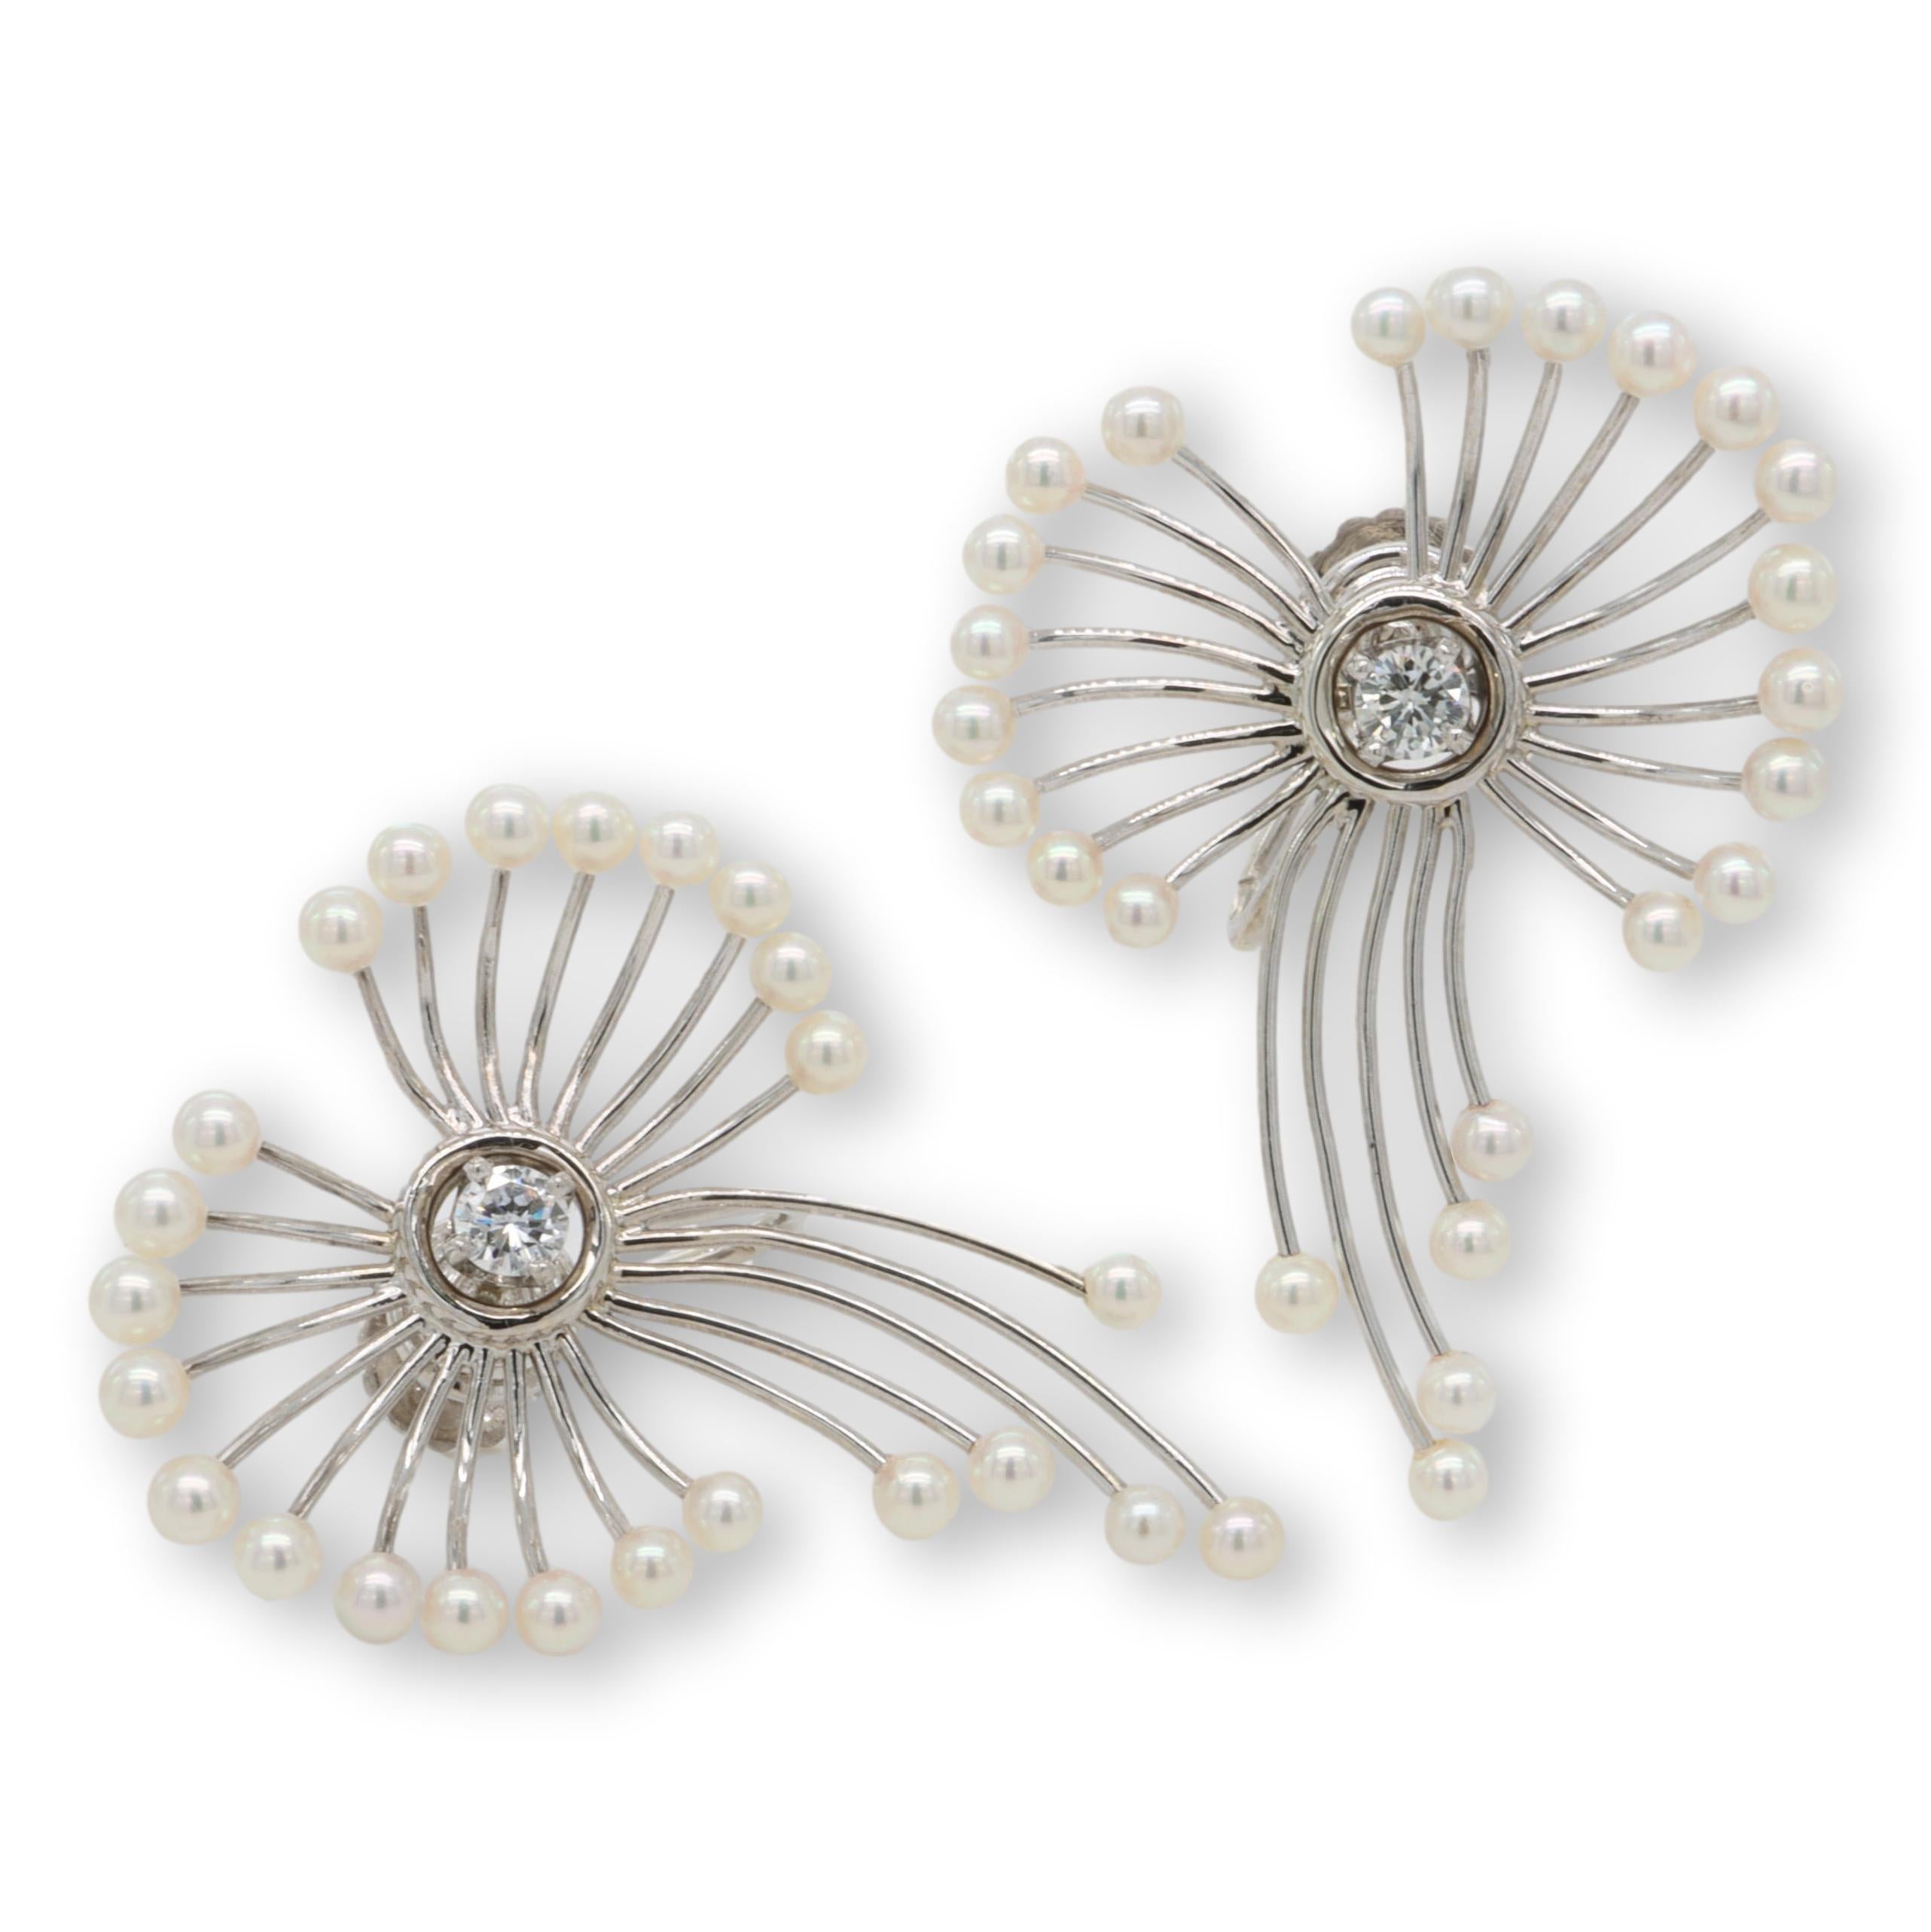 Vintage-Ohrringe aus 14 Karat Weißgold mit 2 runden Diamanten im Brillantschliff und 48 Akoya-Perlen von 2,6-2,8 mm Durchmesser mit rosafarbenem Lüster in offener Blütenform. Beide Ohrringe haben einen Vintage-Schraubverschluss. Mit dem Metallgehalt